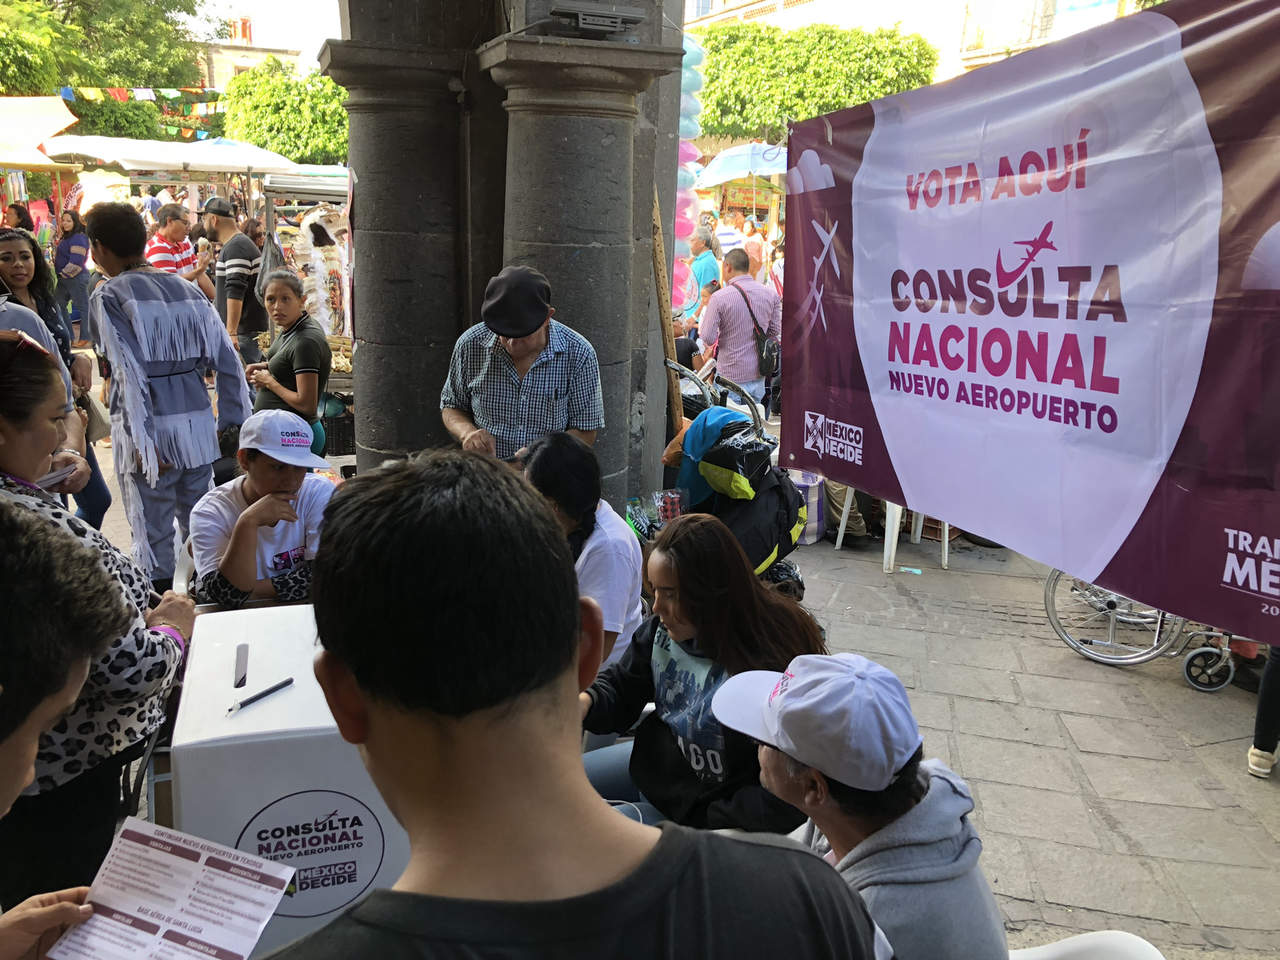 La Confederación Patronal de la República Mexicana (Coparmex) manifestó su compromiso con la promoción de la democracia a través de la participación ciudadana, la cual es imprescindible en la democracia.  (ARCHIVO)